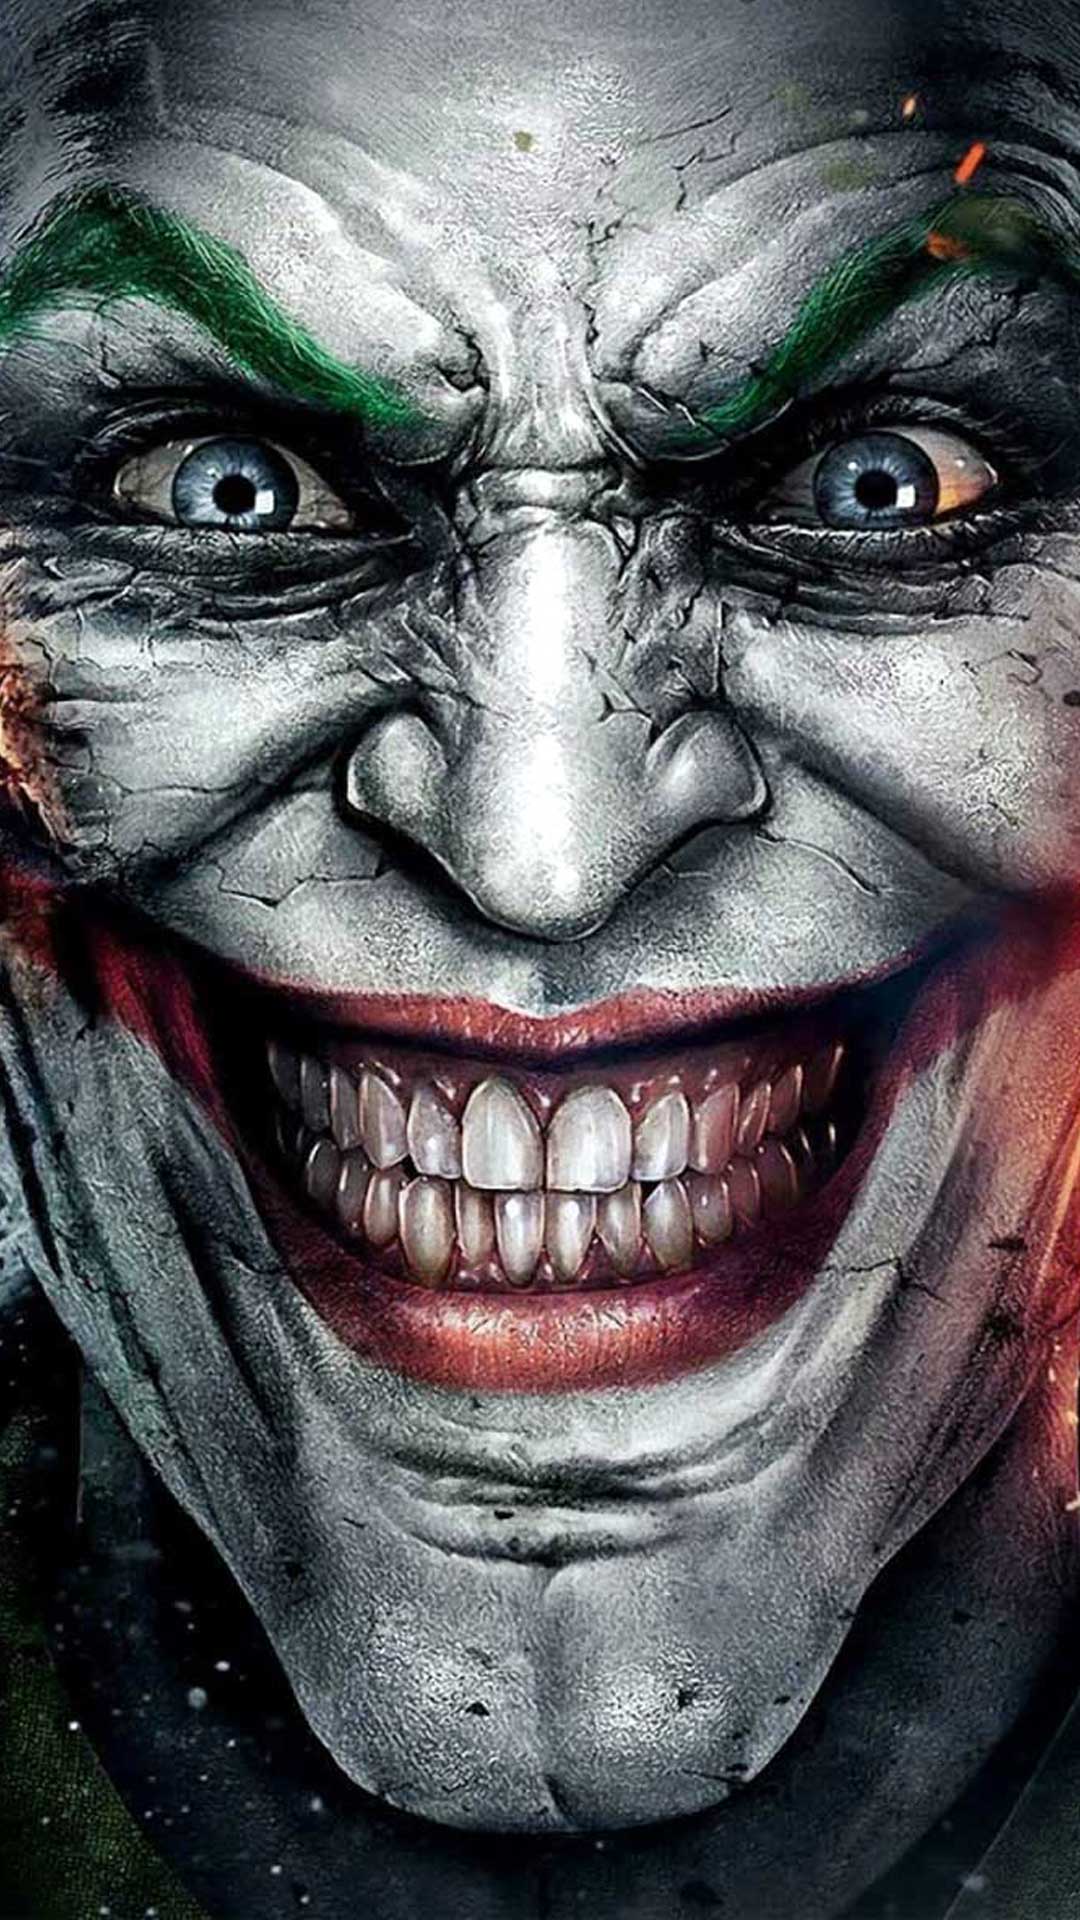 Joker 3D iPhone Wallpaper resolution 1080x1920